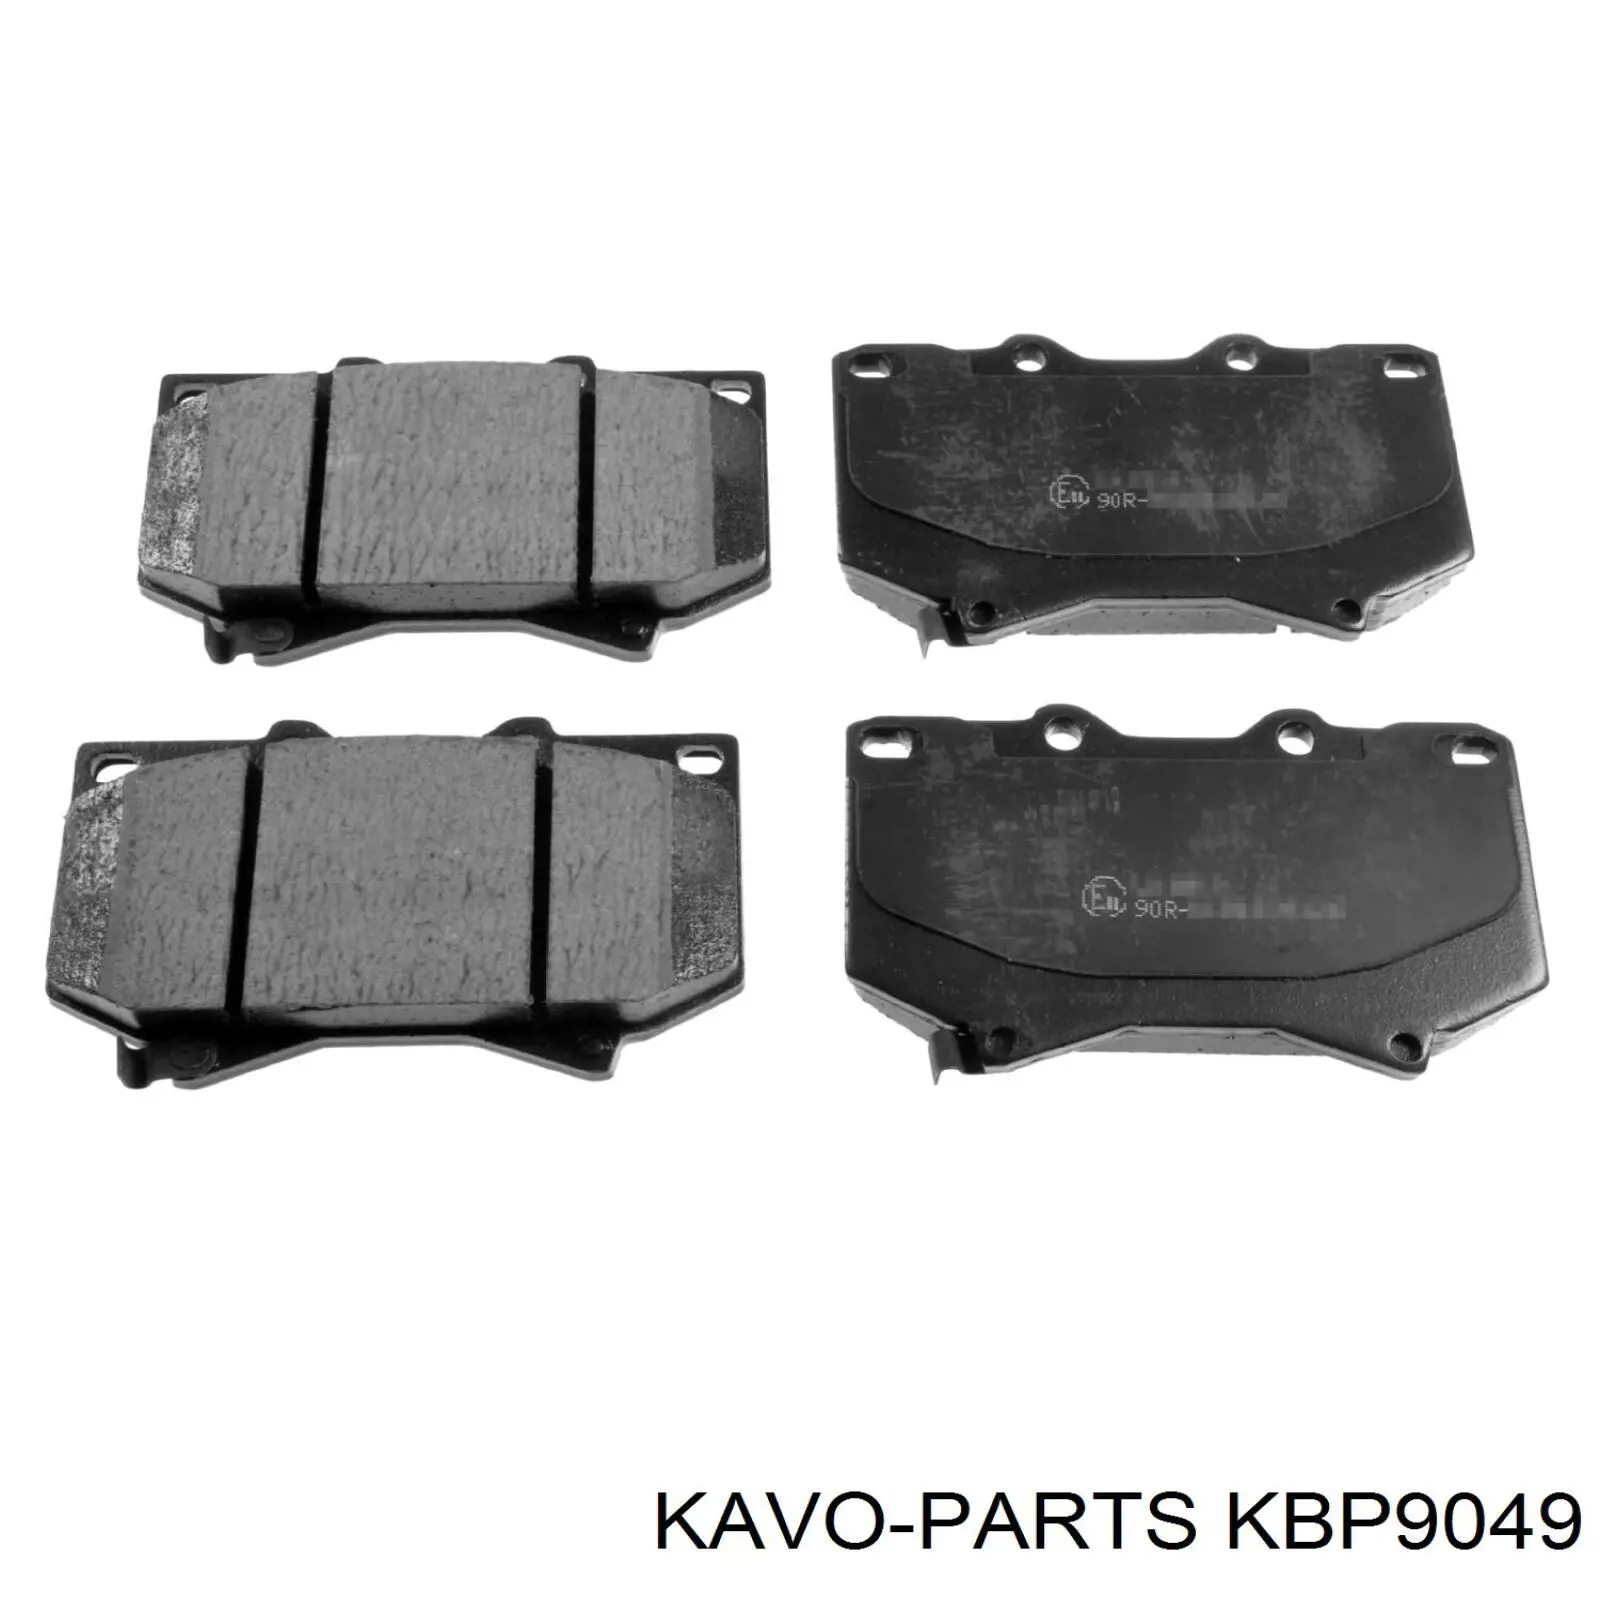 KBP-9049 Kavo Parts pastillas de freno traseras